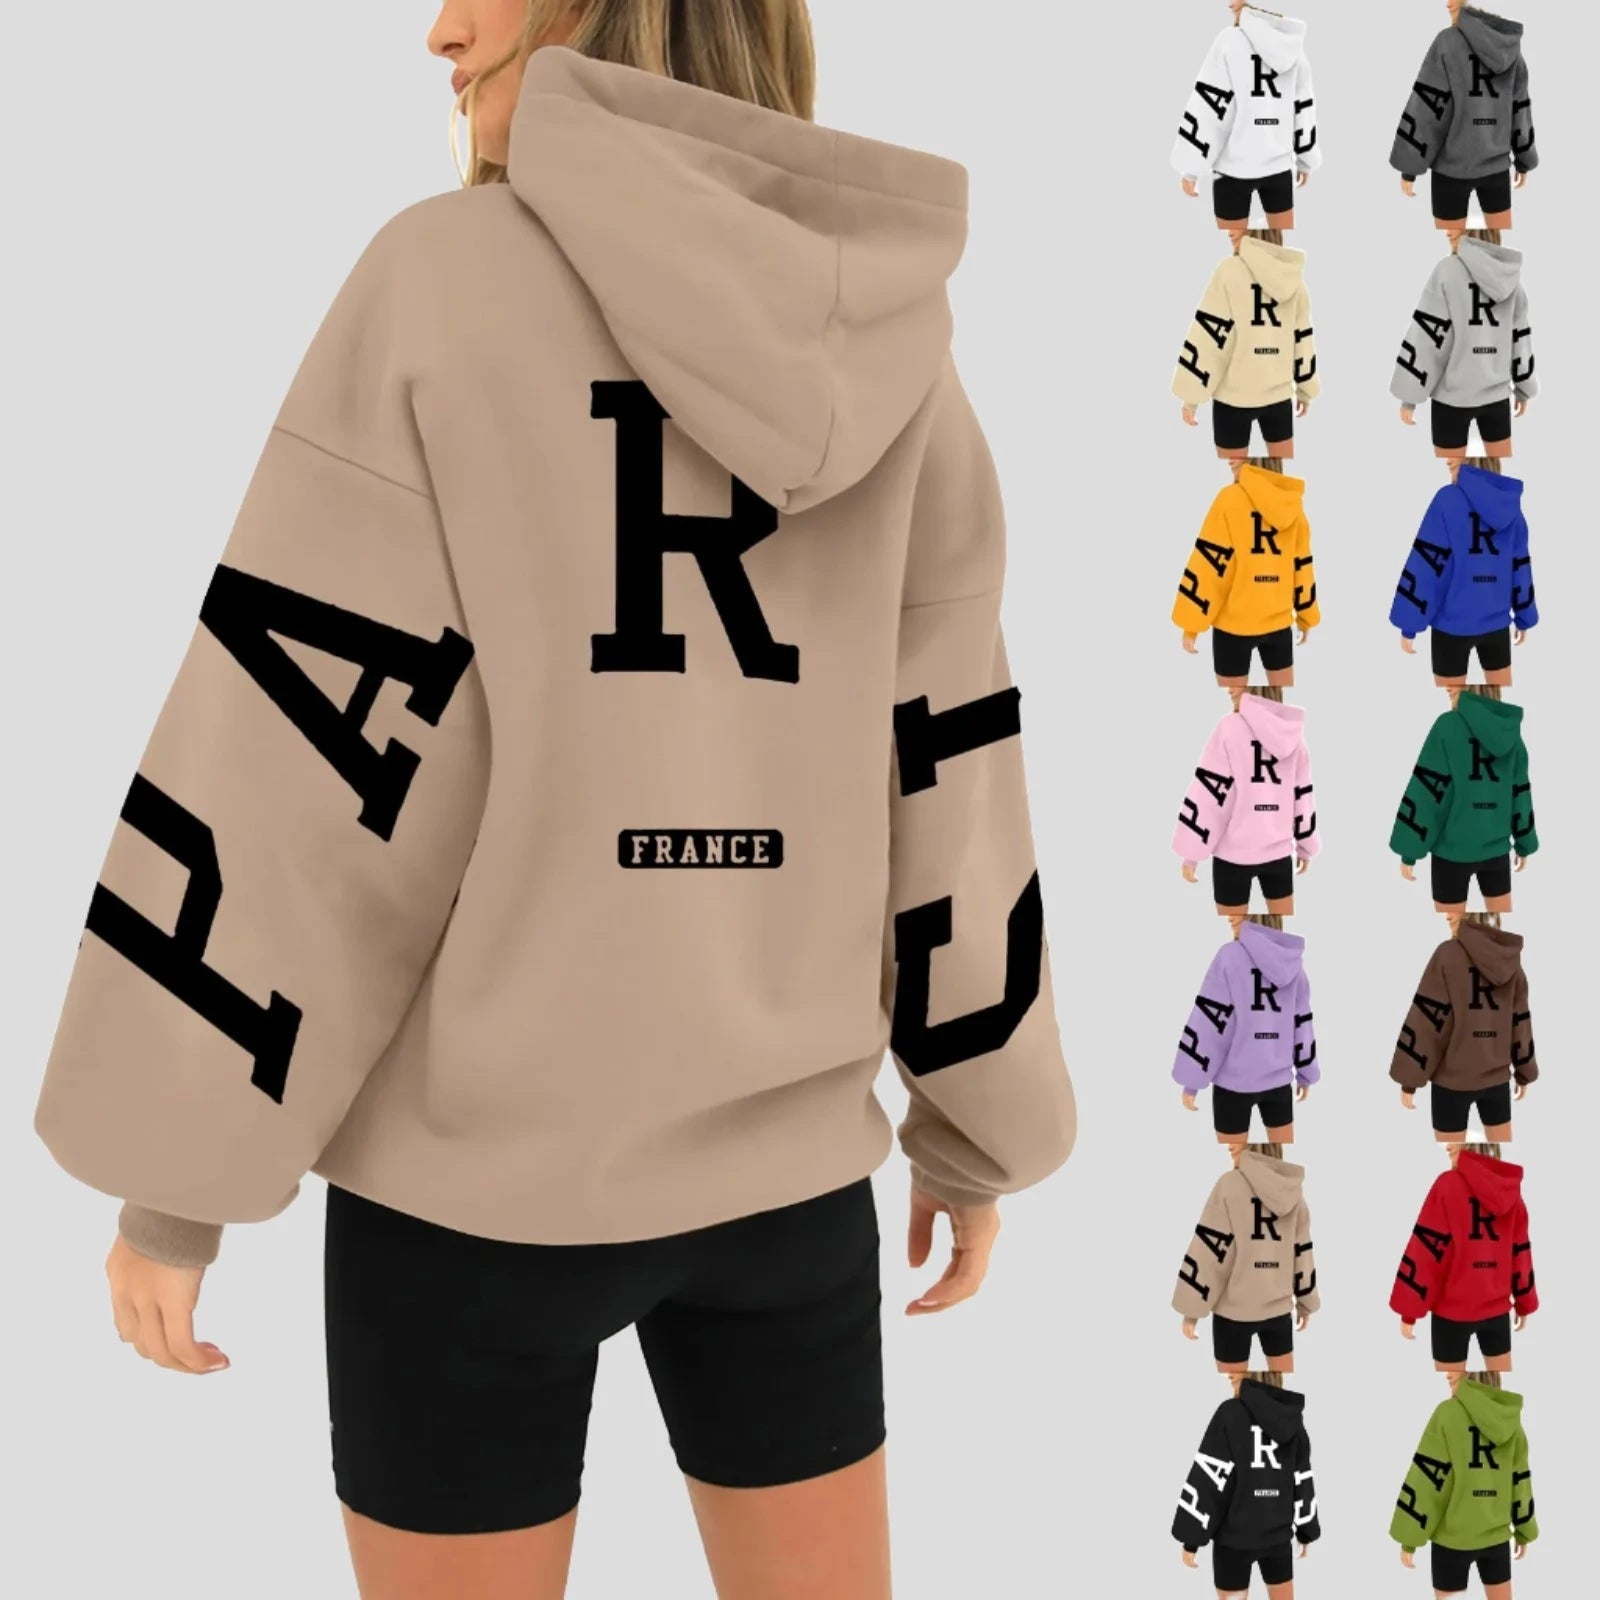 Paris France Printed Sweatshirt Hoodie for Women - true-deals-club